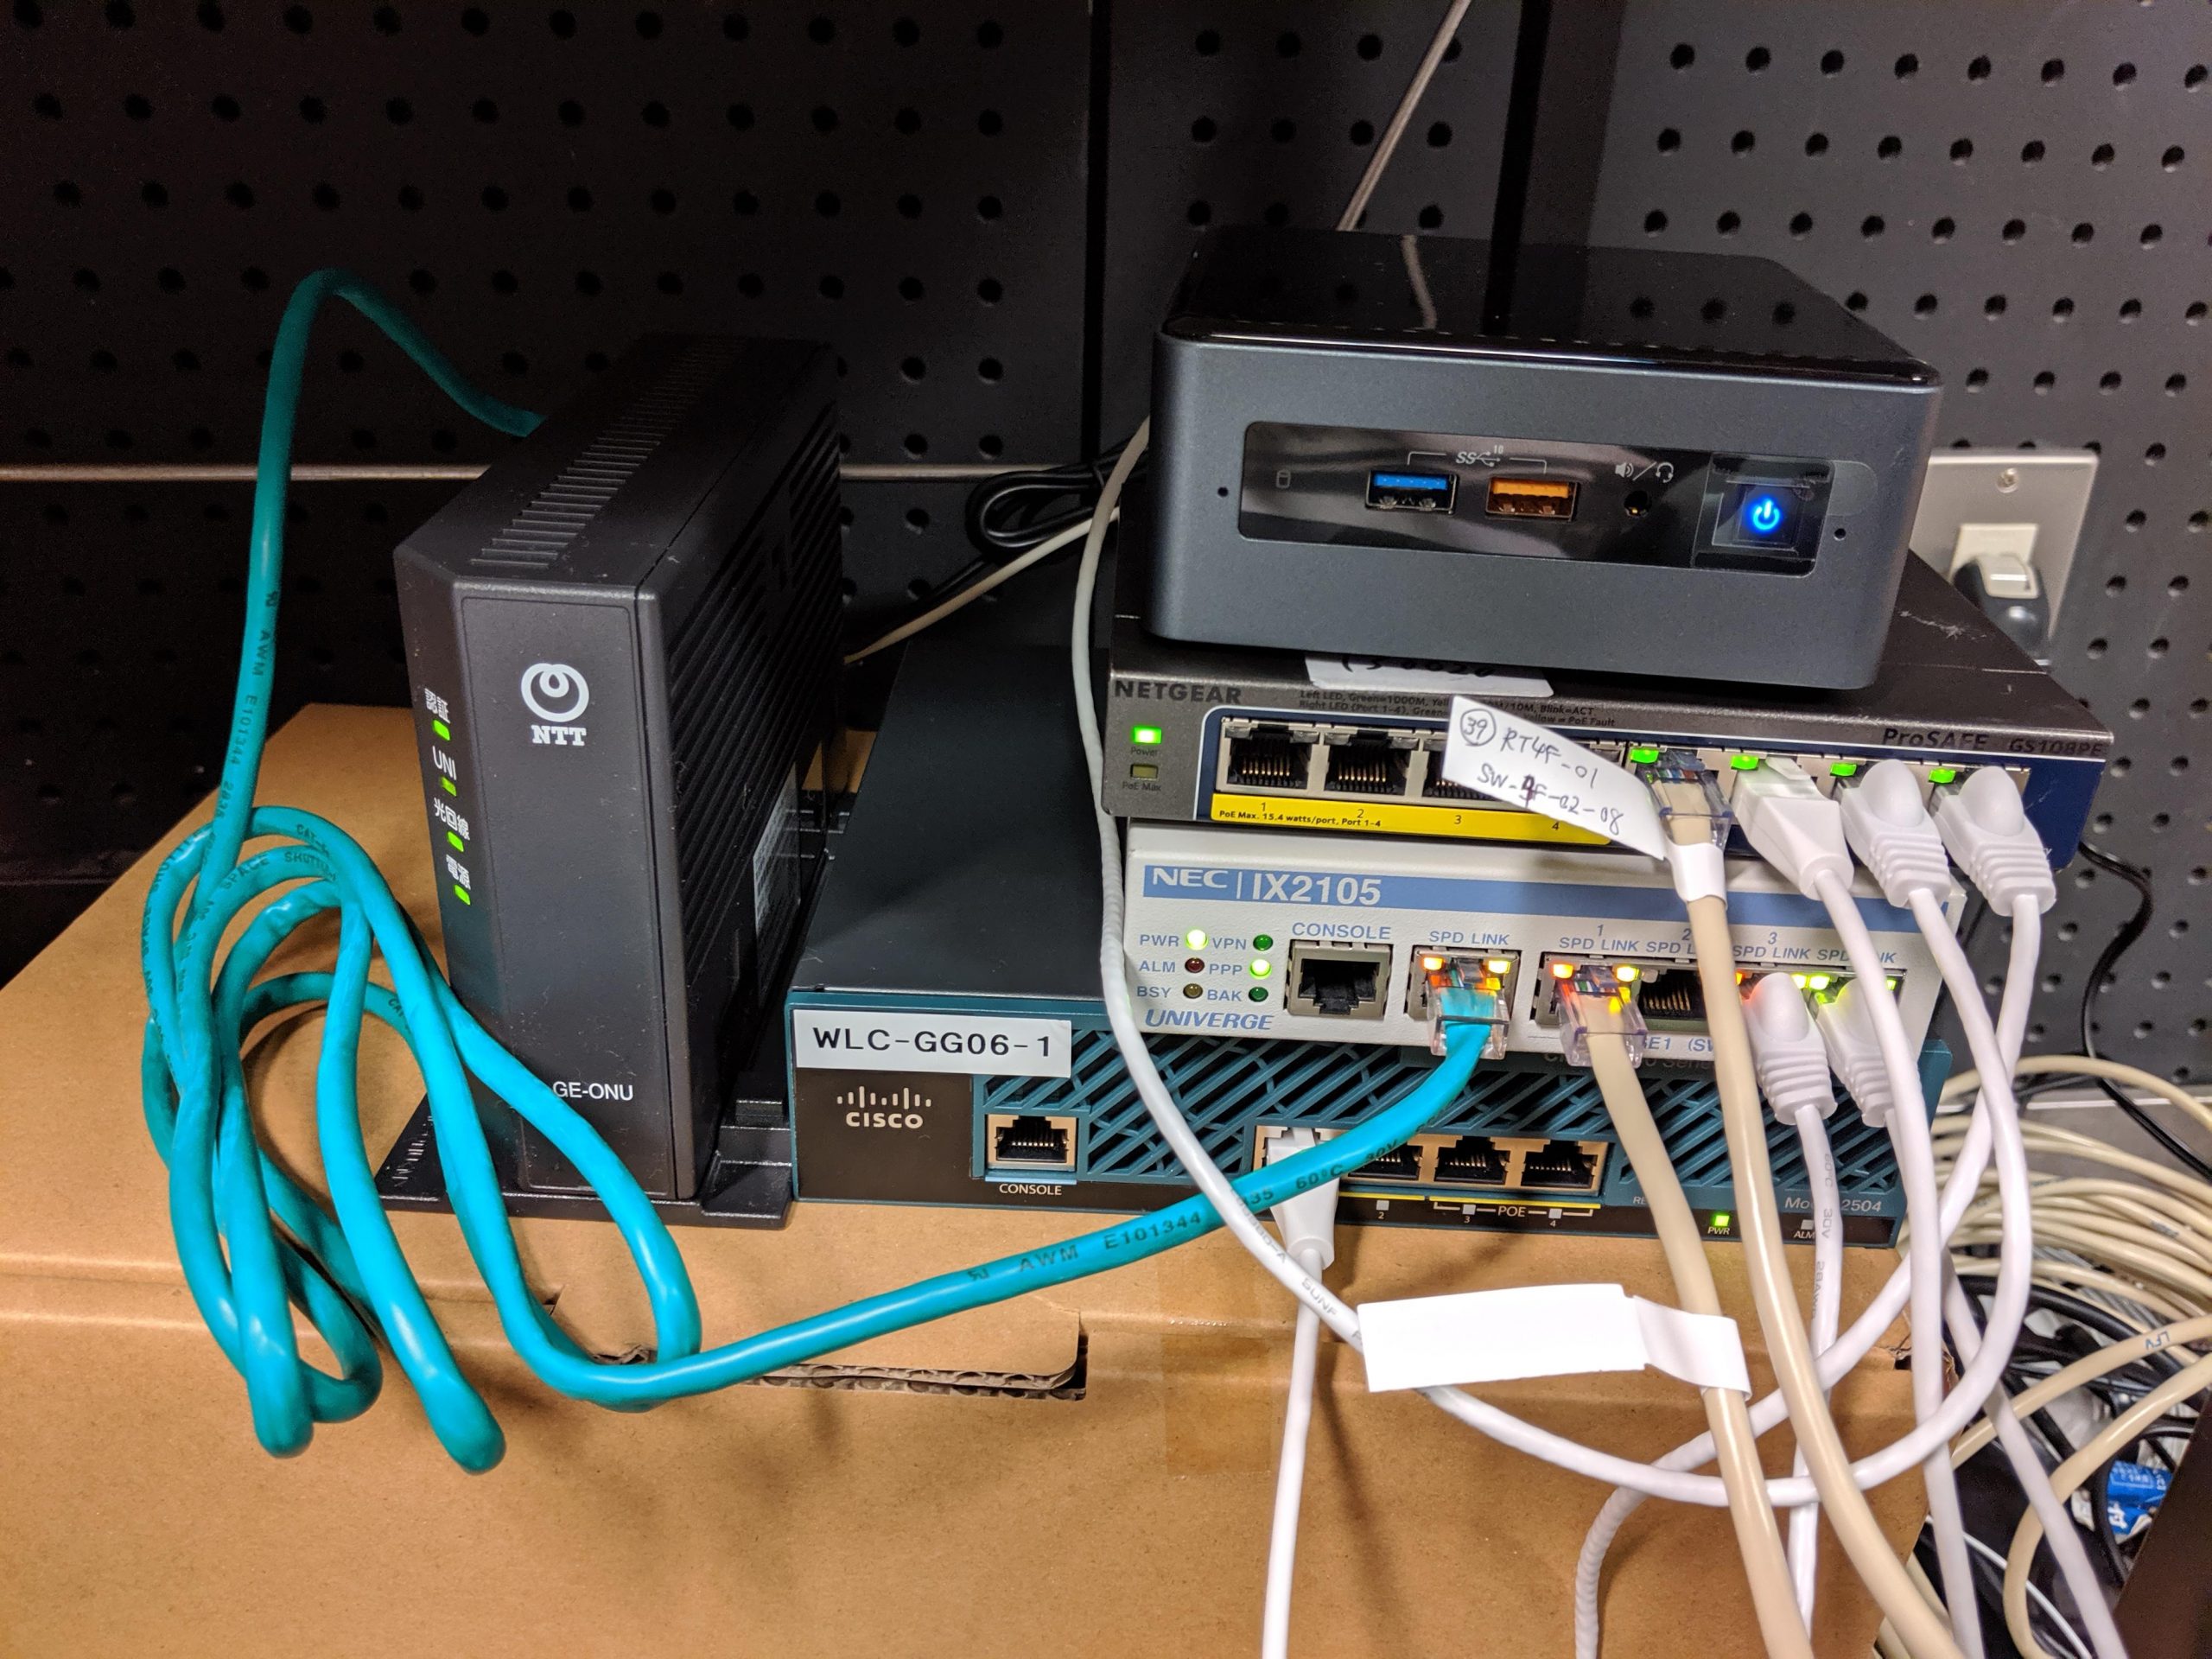 ネットワーク機器とサーバは1箇所に集めておきました。